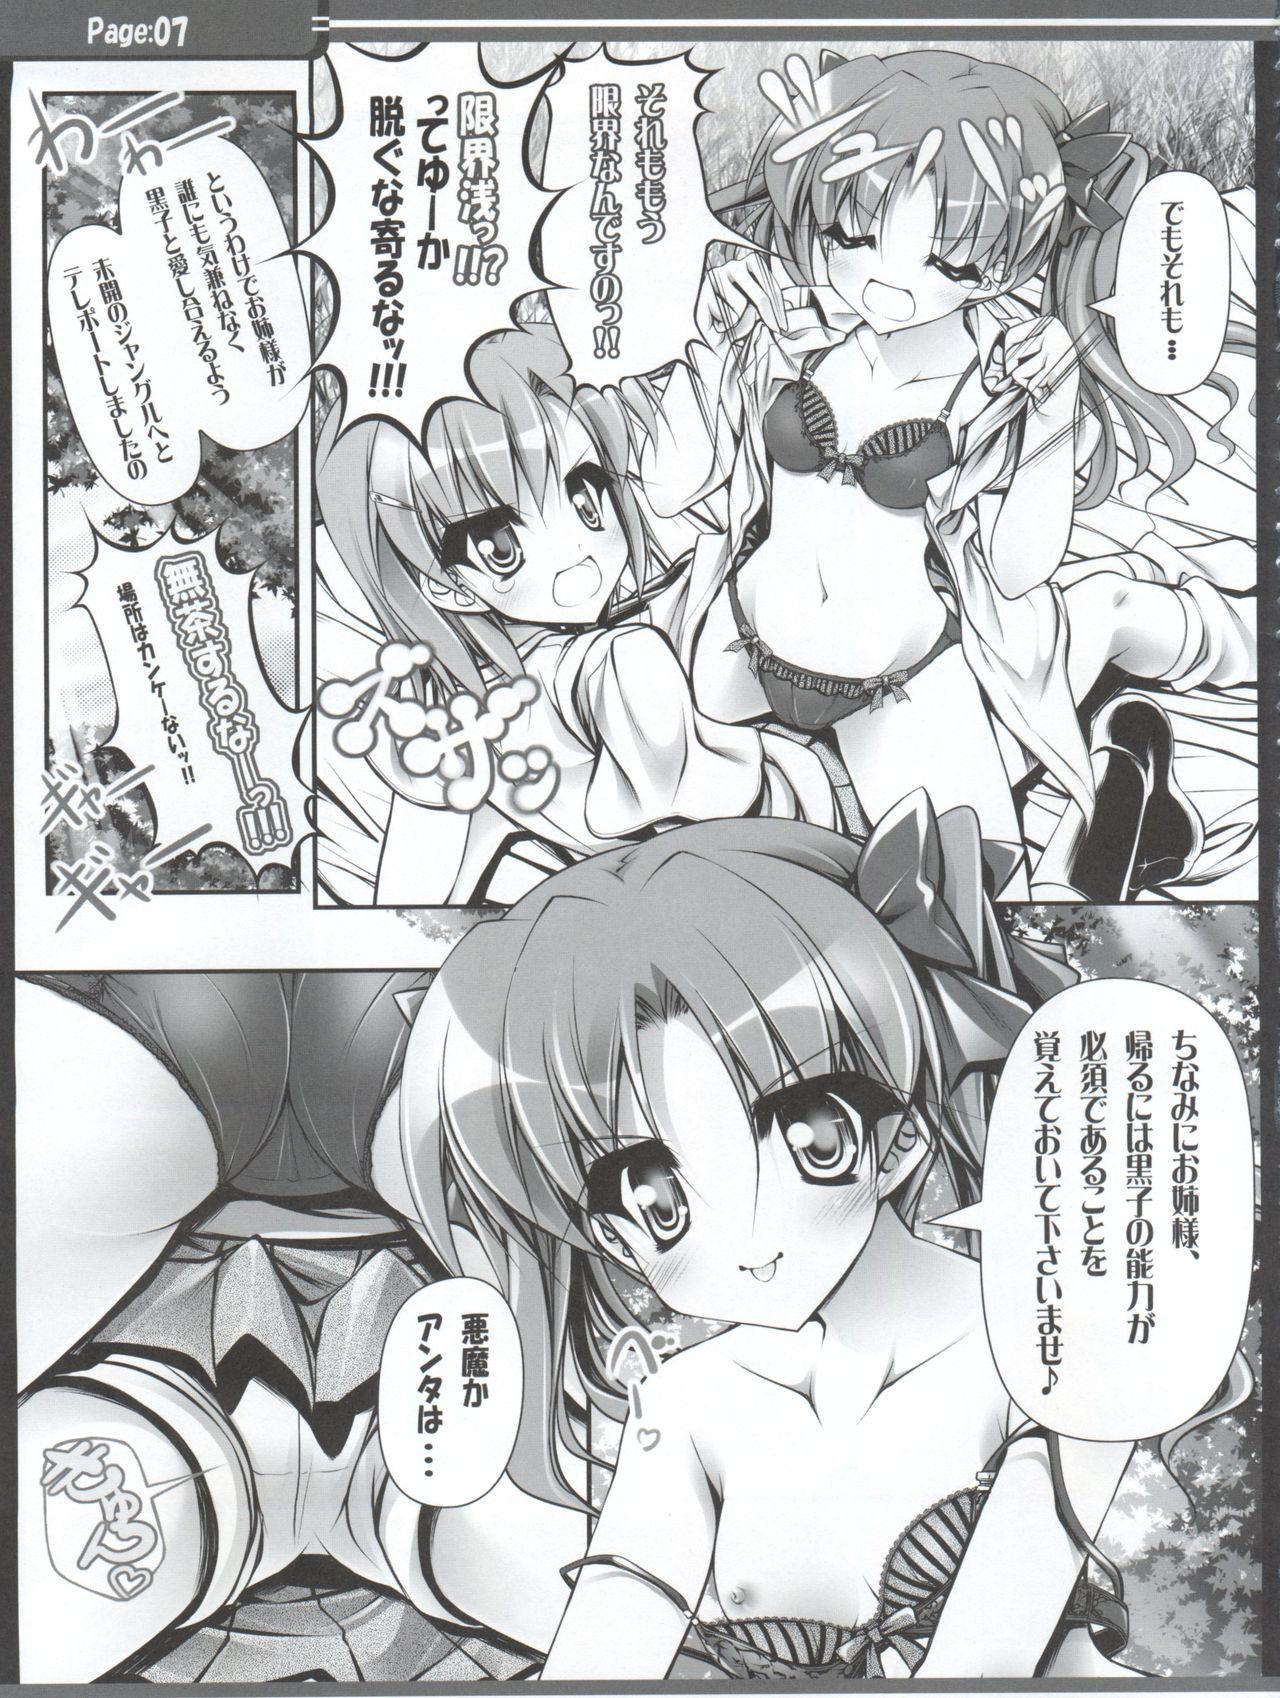 Free Amature Porn Sunao na Onee-sama wa Suki desu ka? - Toaru kagaku no railgun Stretch - Page 8